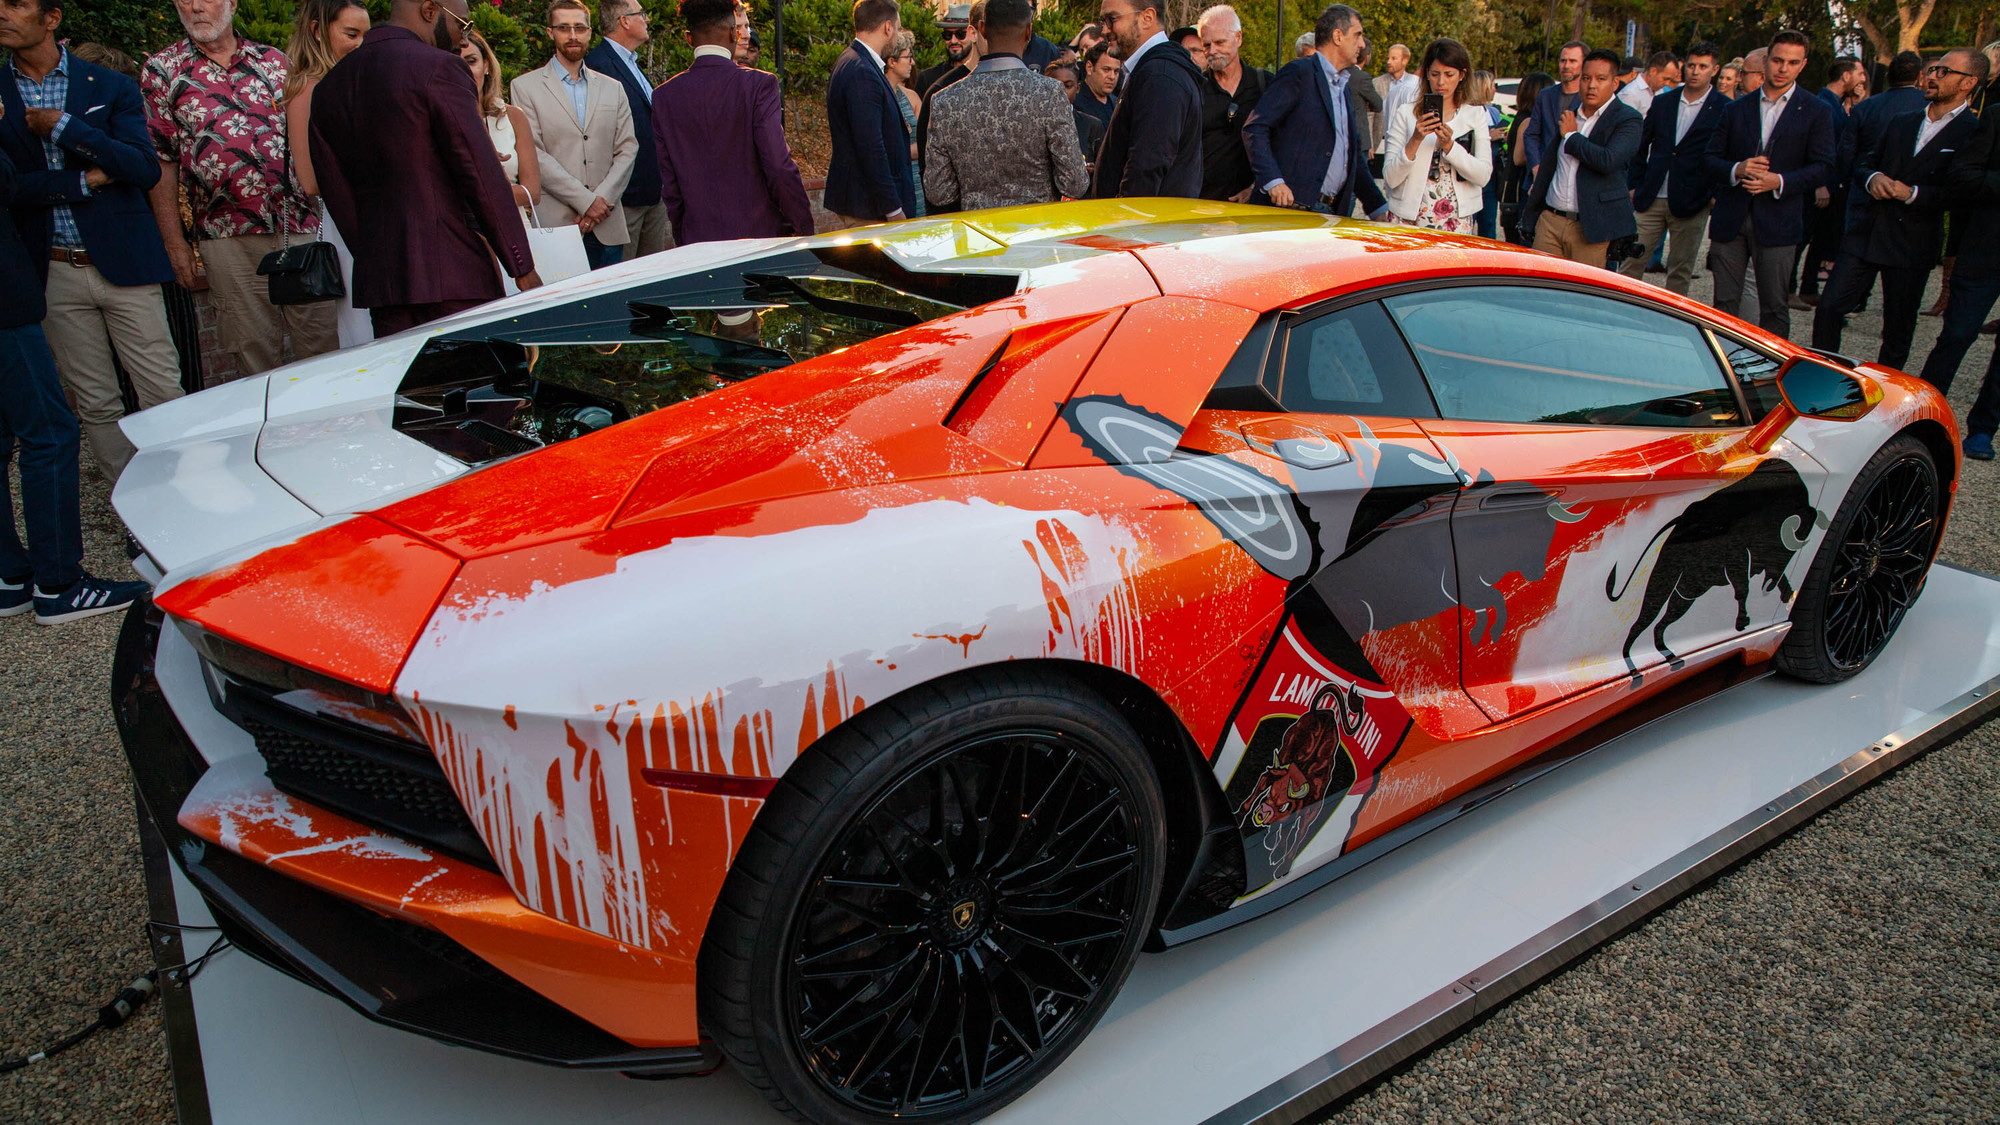 Original Lamborghini art car bows at Monterey Car Week